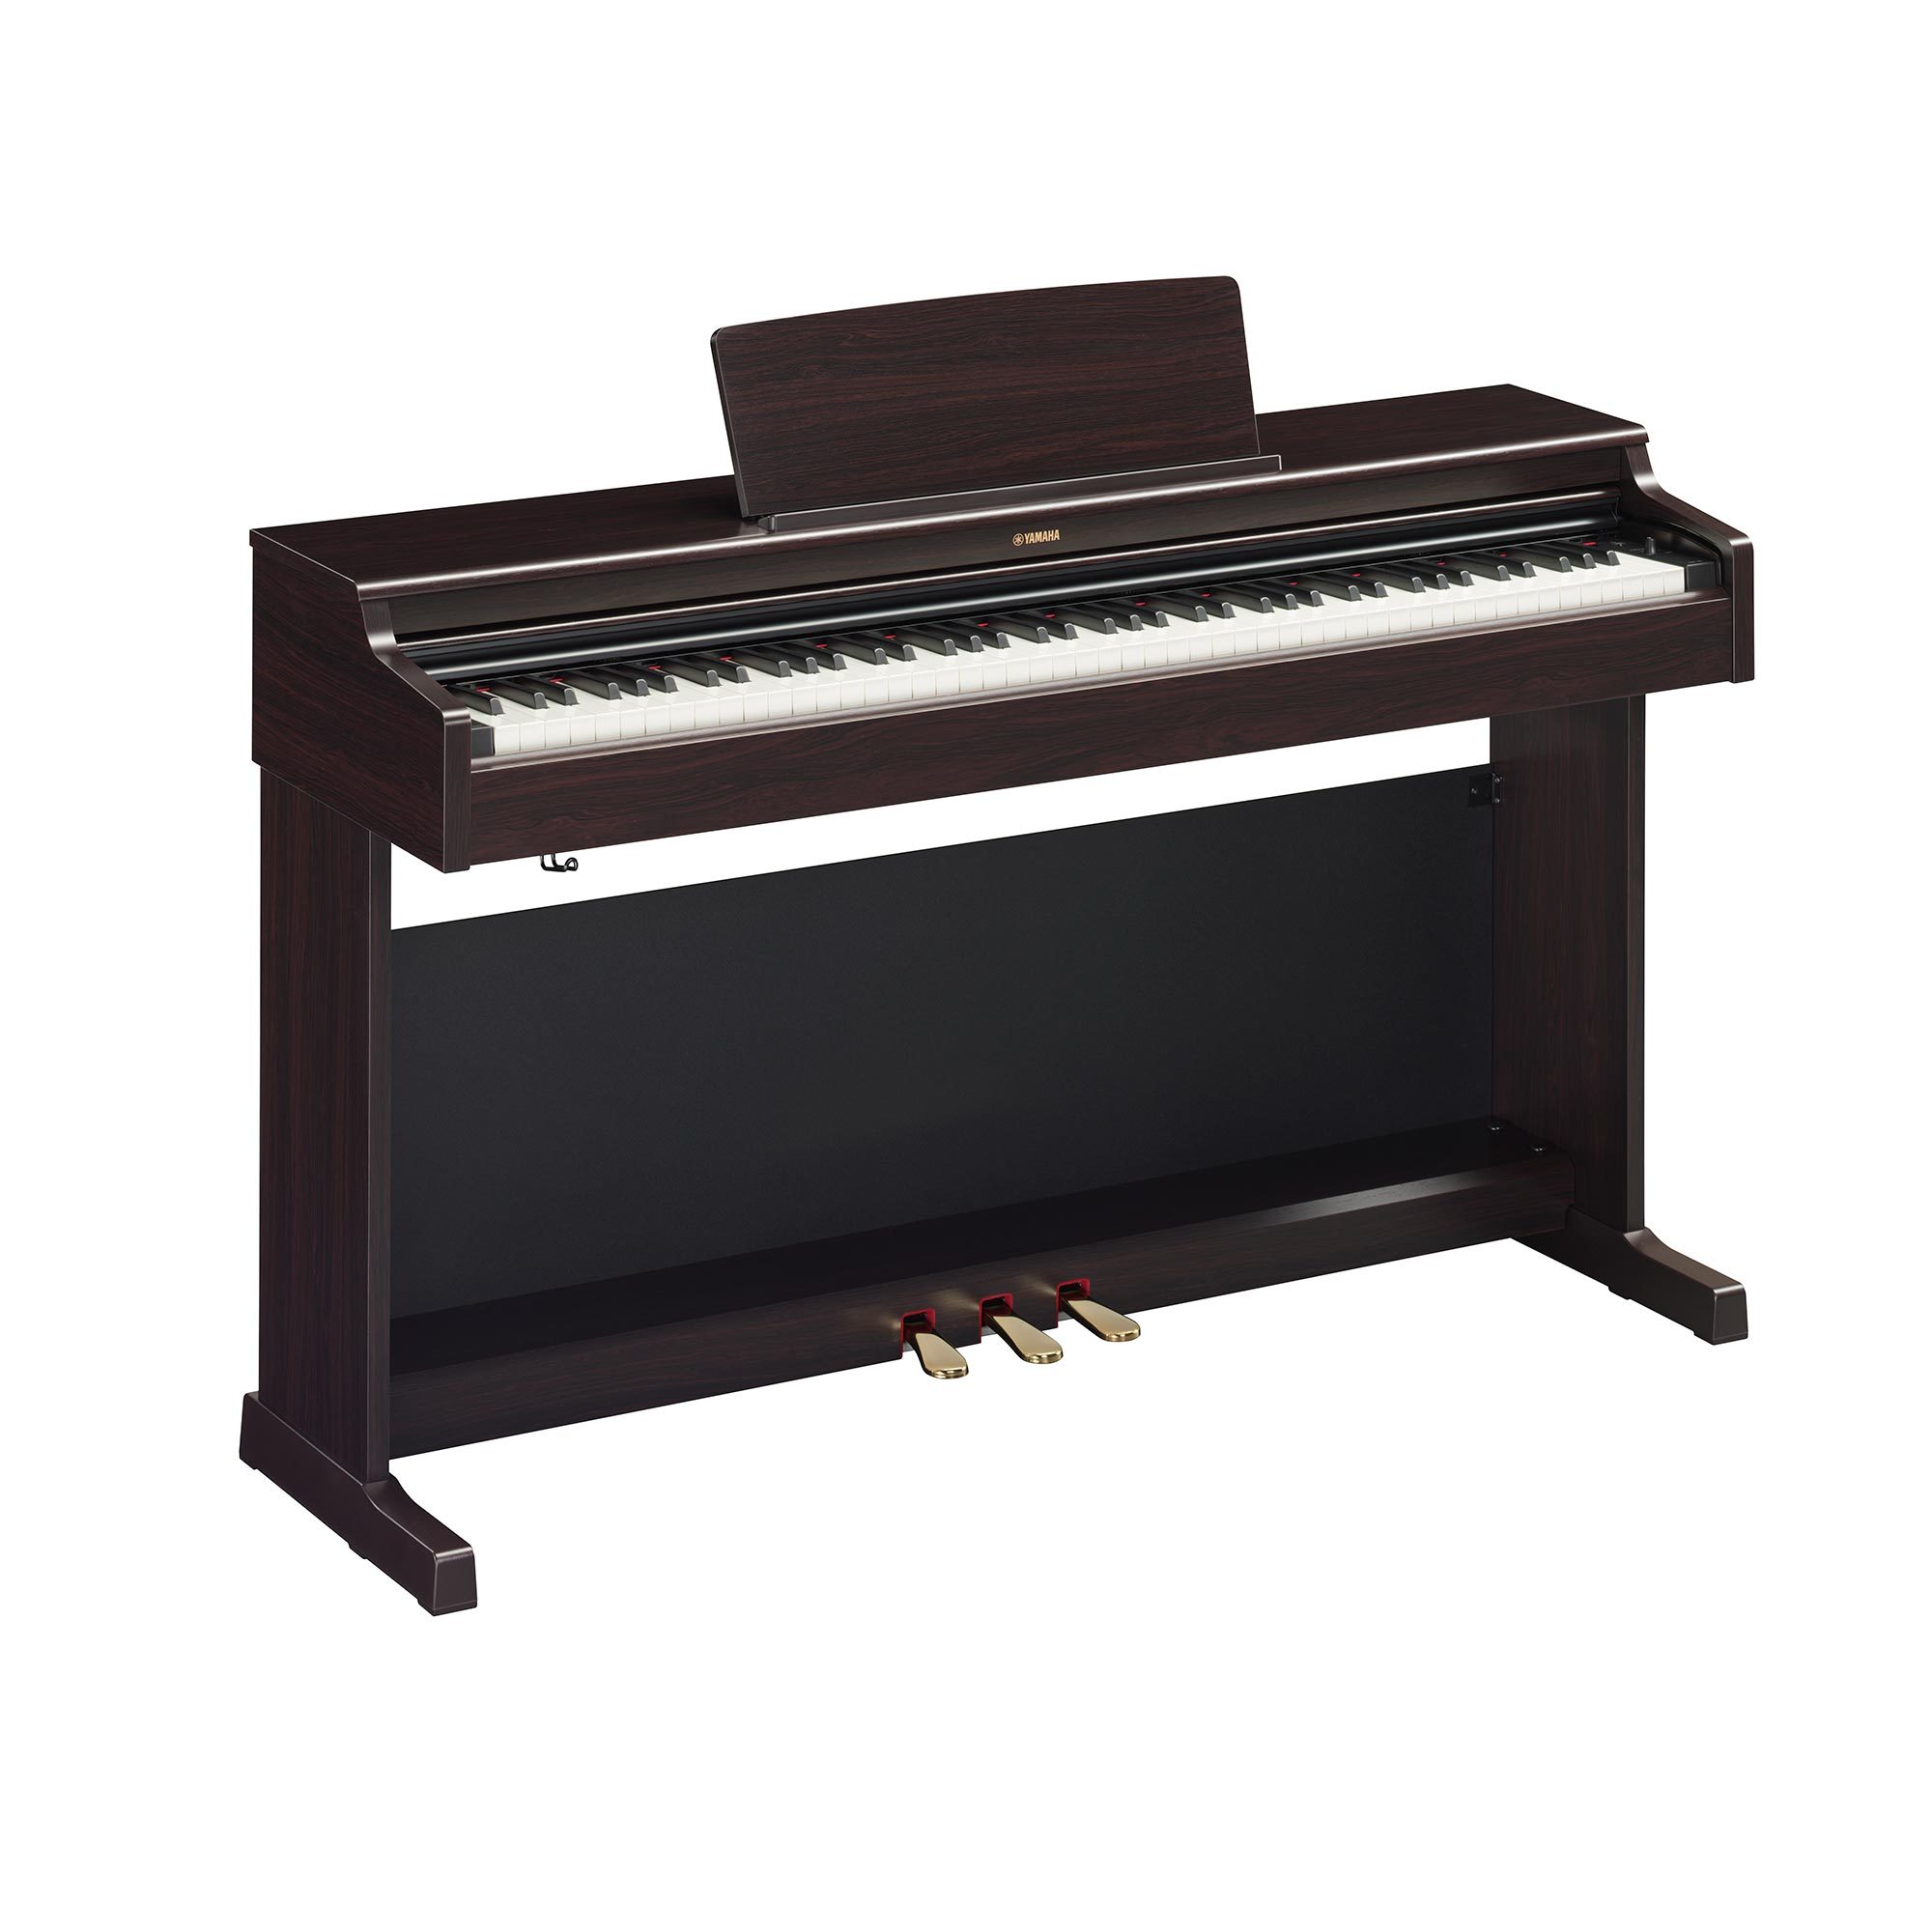 ヤマハ株式会社より電子ピアノ新製品情報がありました。人気のアリウスがモデルチェンジ。グランドピアノの音と響きにこだわったベーシックな電子ピアノ「ARIUS（アリウス）」の新製品として、『YDP-165』『YDP-145』を4月27日（水）に、『YDP-S55』『YDP-S35』を5月26日（木）に発 […]